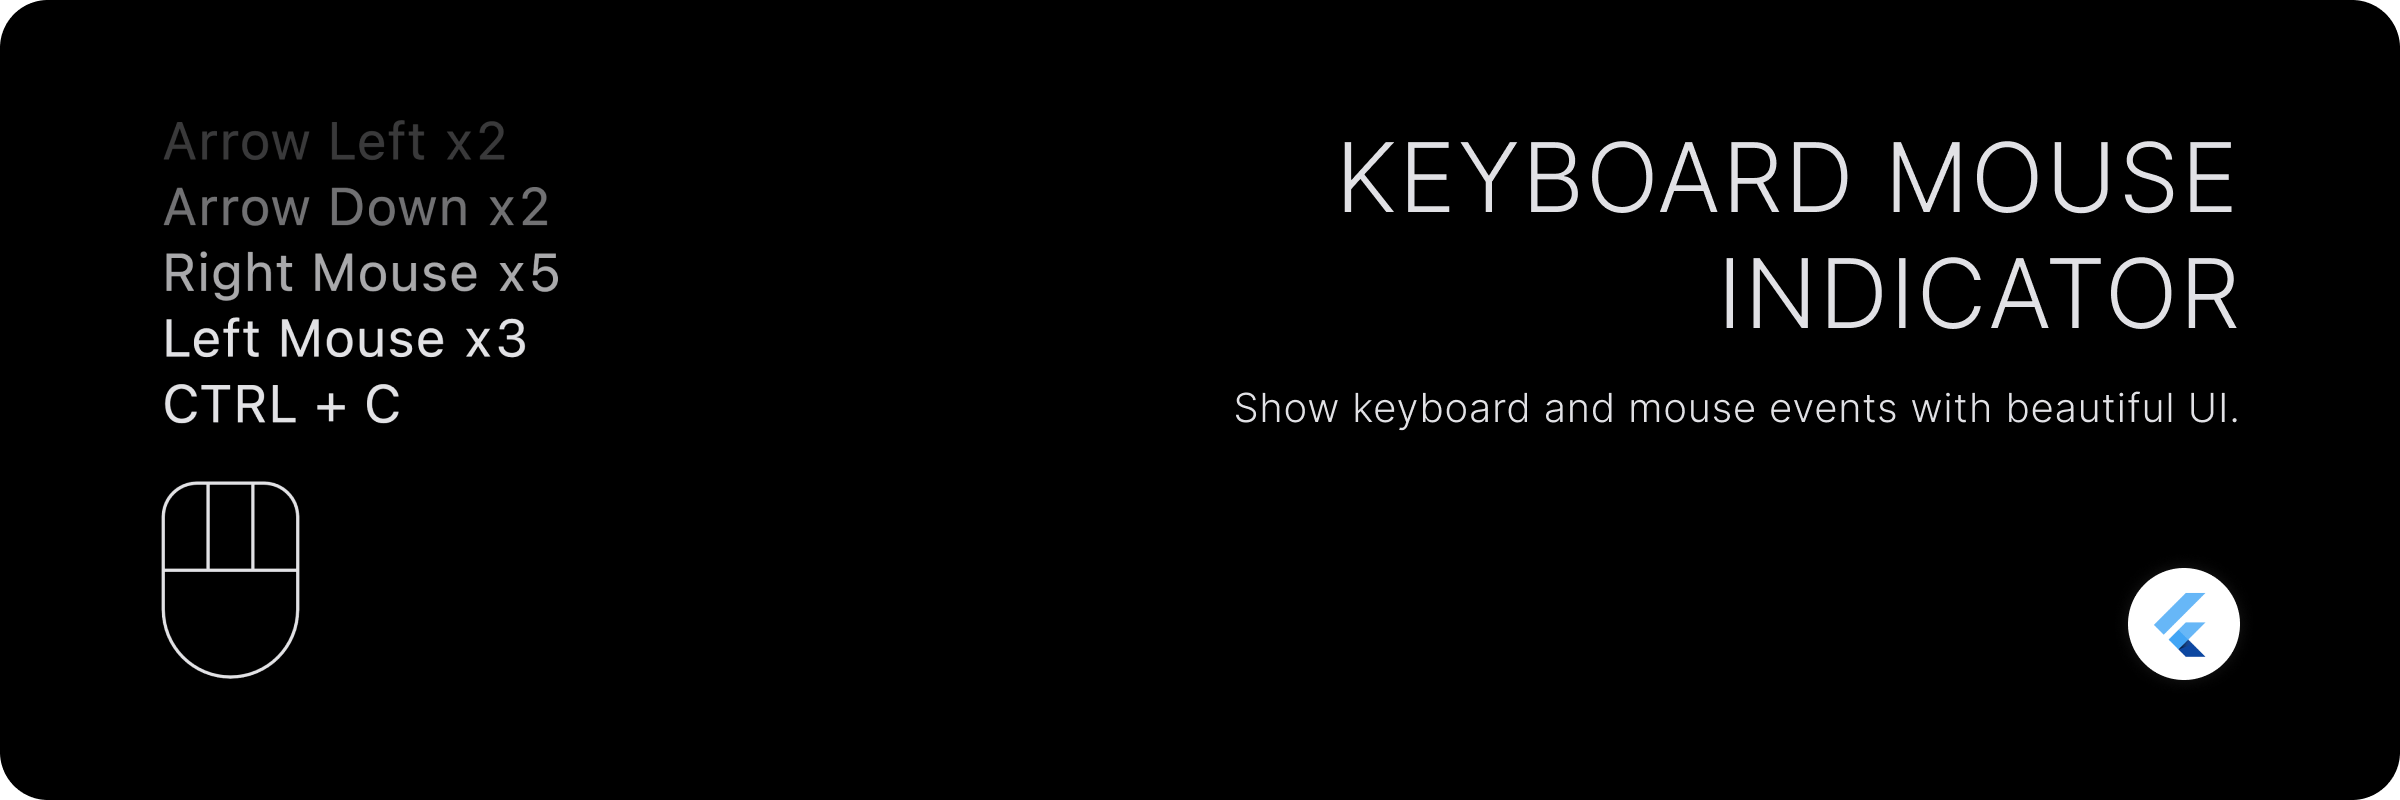 Keyboard Mouse Indicator